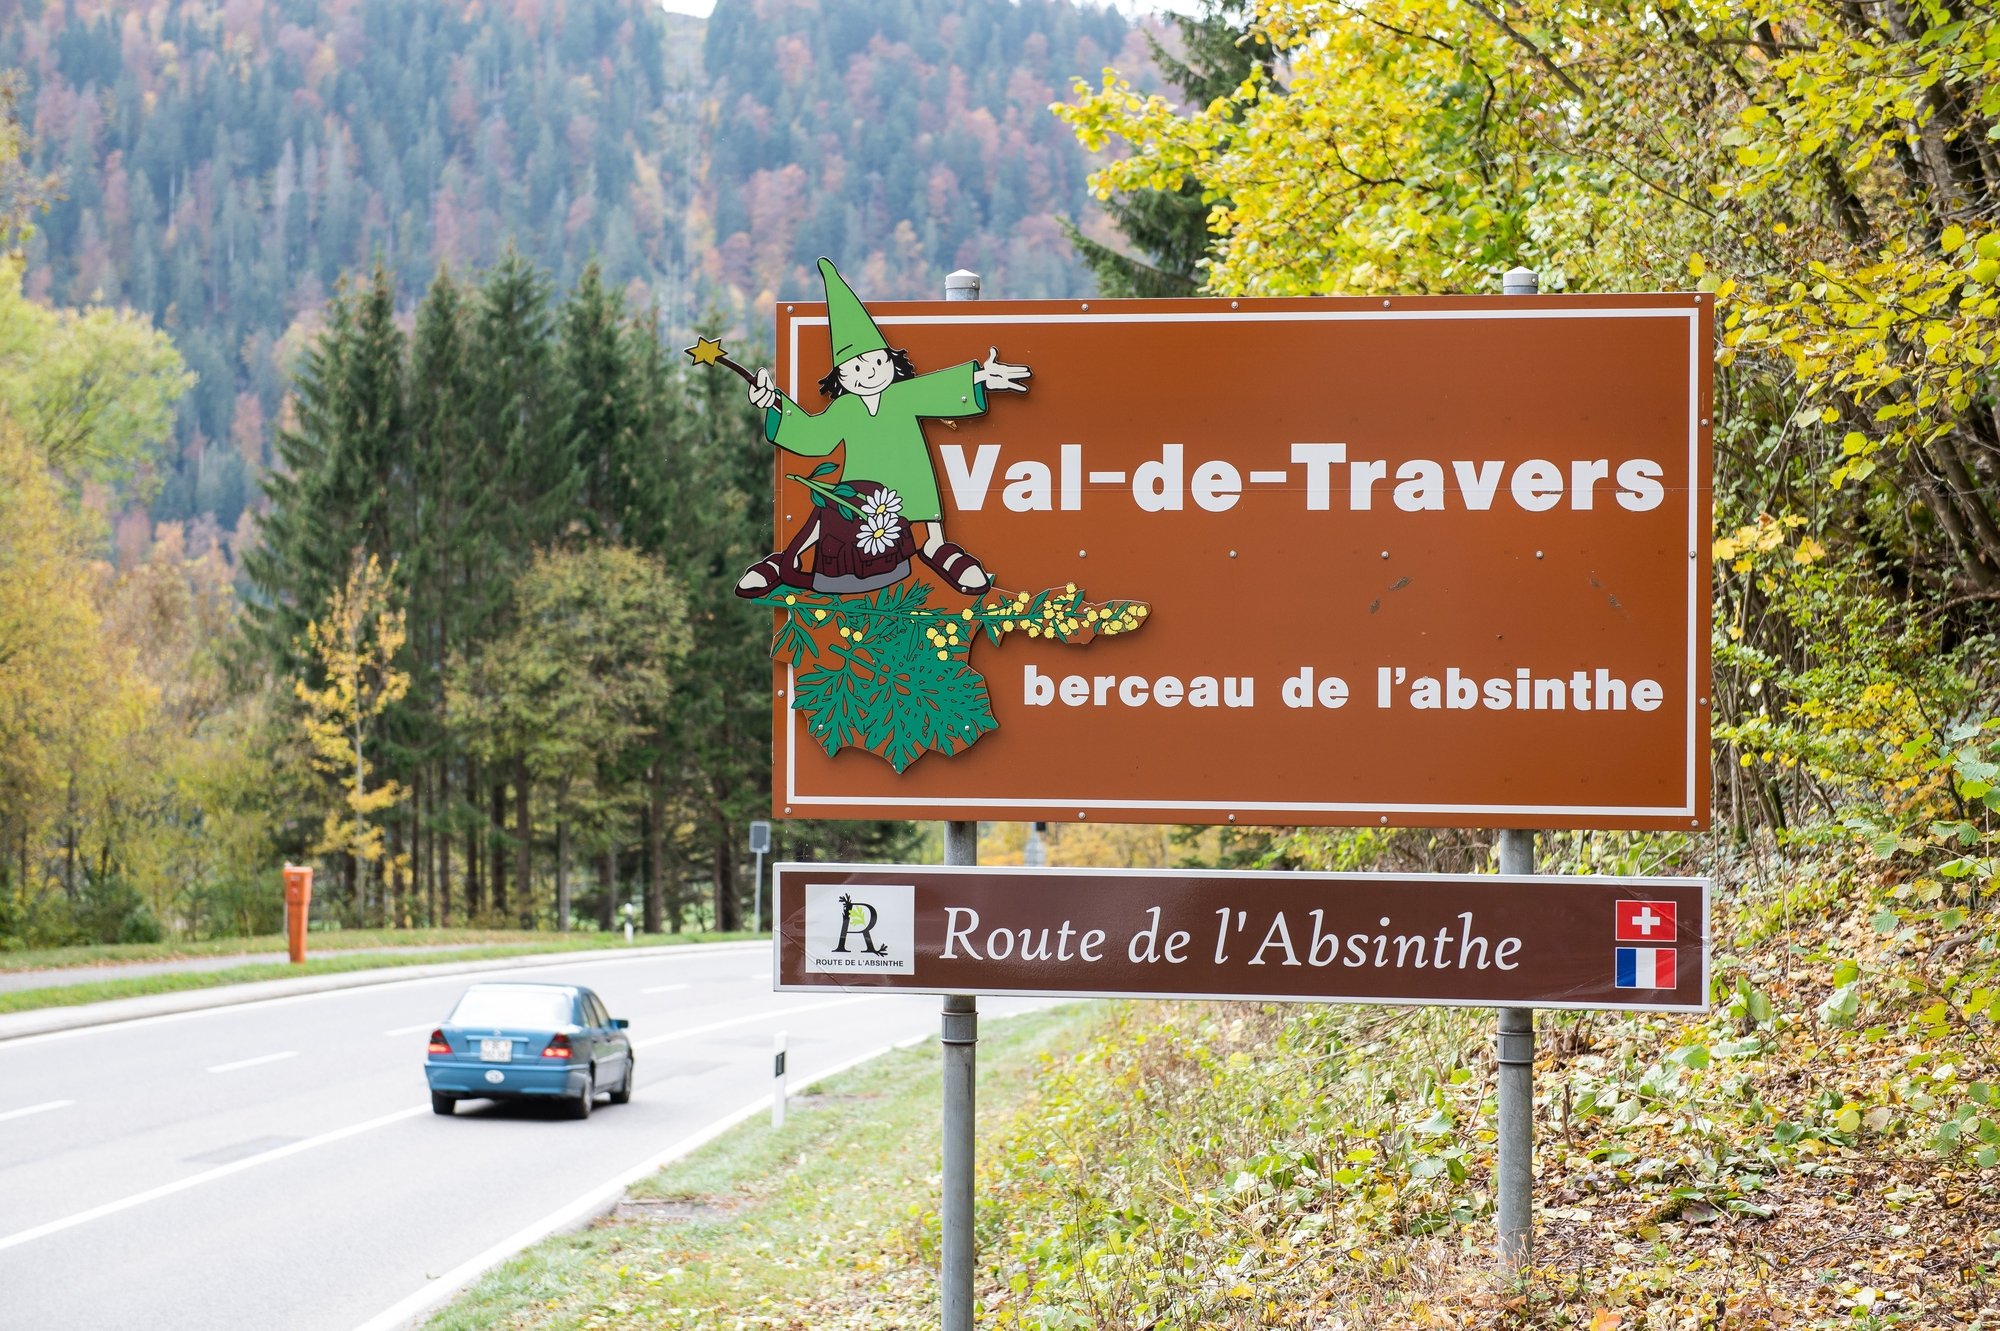 Que peut-il bien manquer au Val-de-Travers? Les jeunes sont invités à le dire sur la plateforme engage.ch.